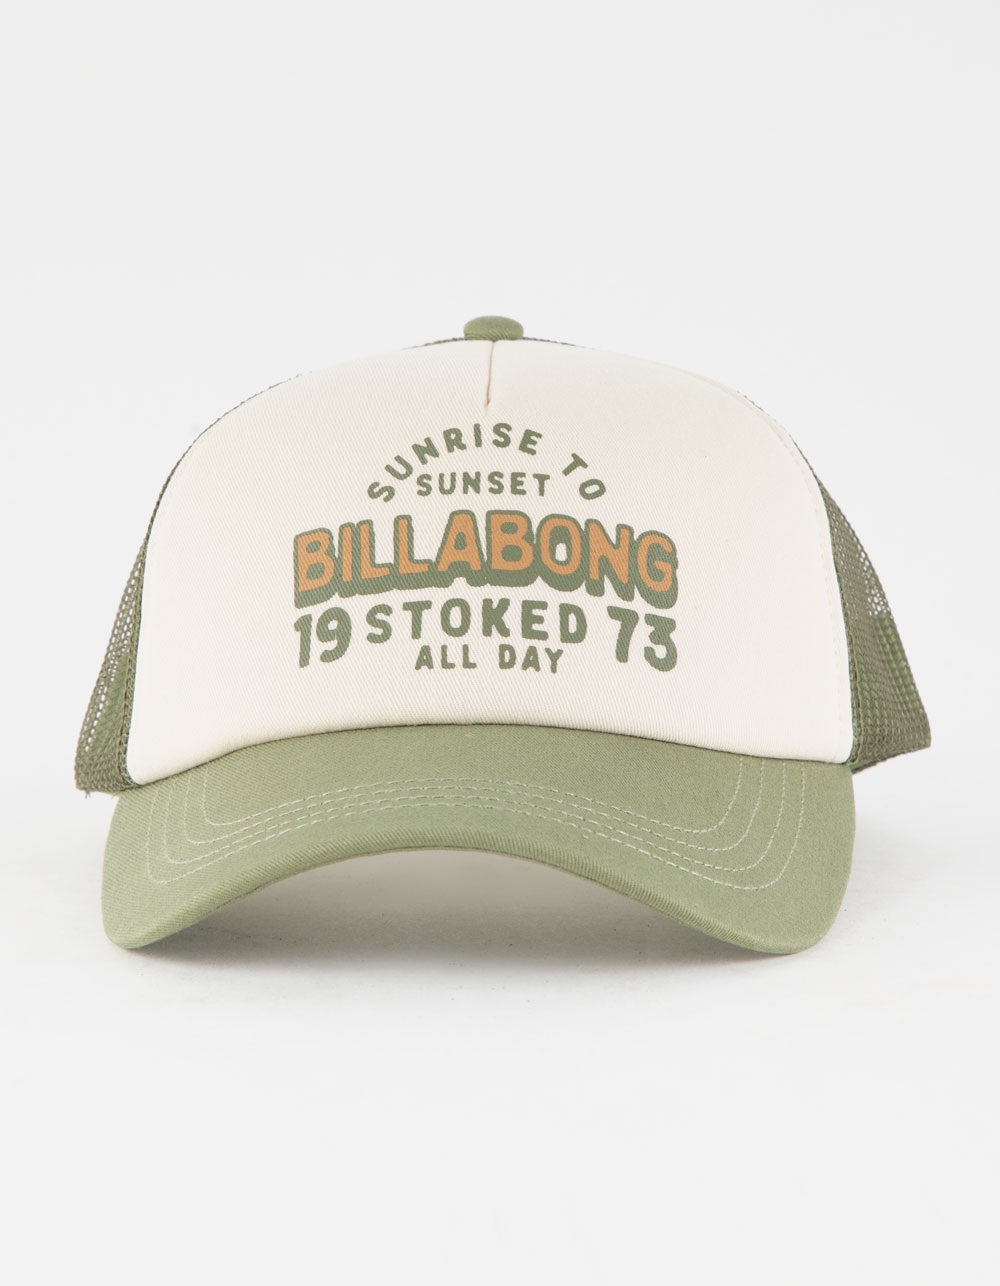 BILLABONG Aloha Forever Tillys Trucker | WHITE/OLIVE Womens Hat 